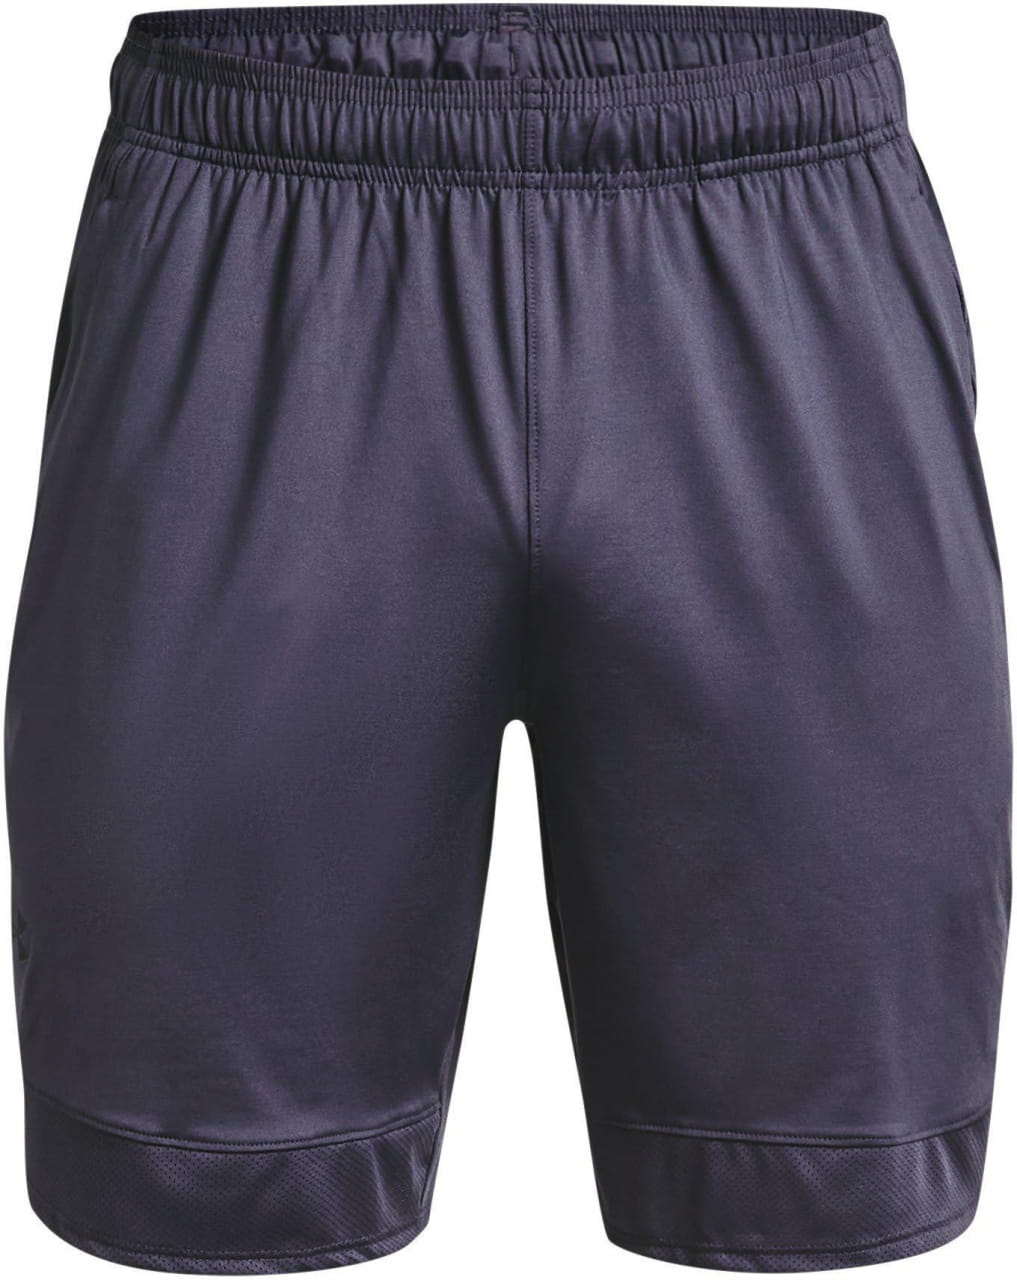 Pantalones cortos de deporte para hombre Under Armour Train Stretch Shorts-GRY